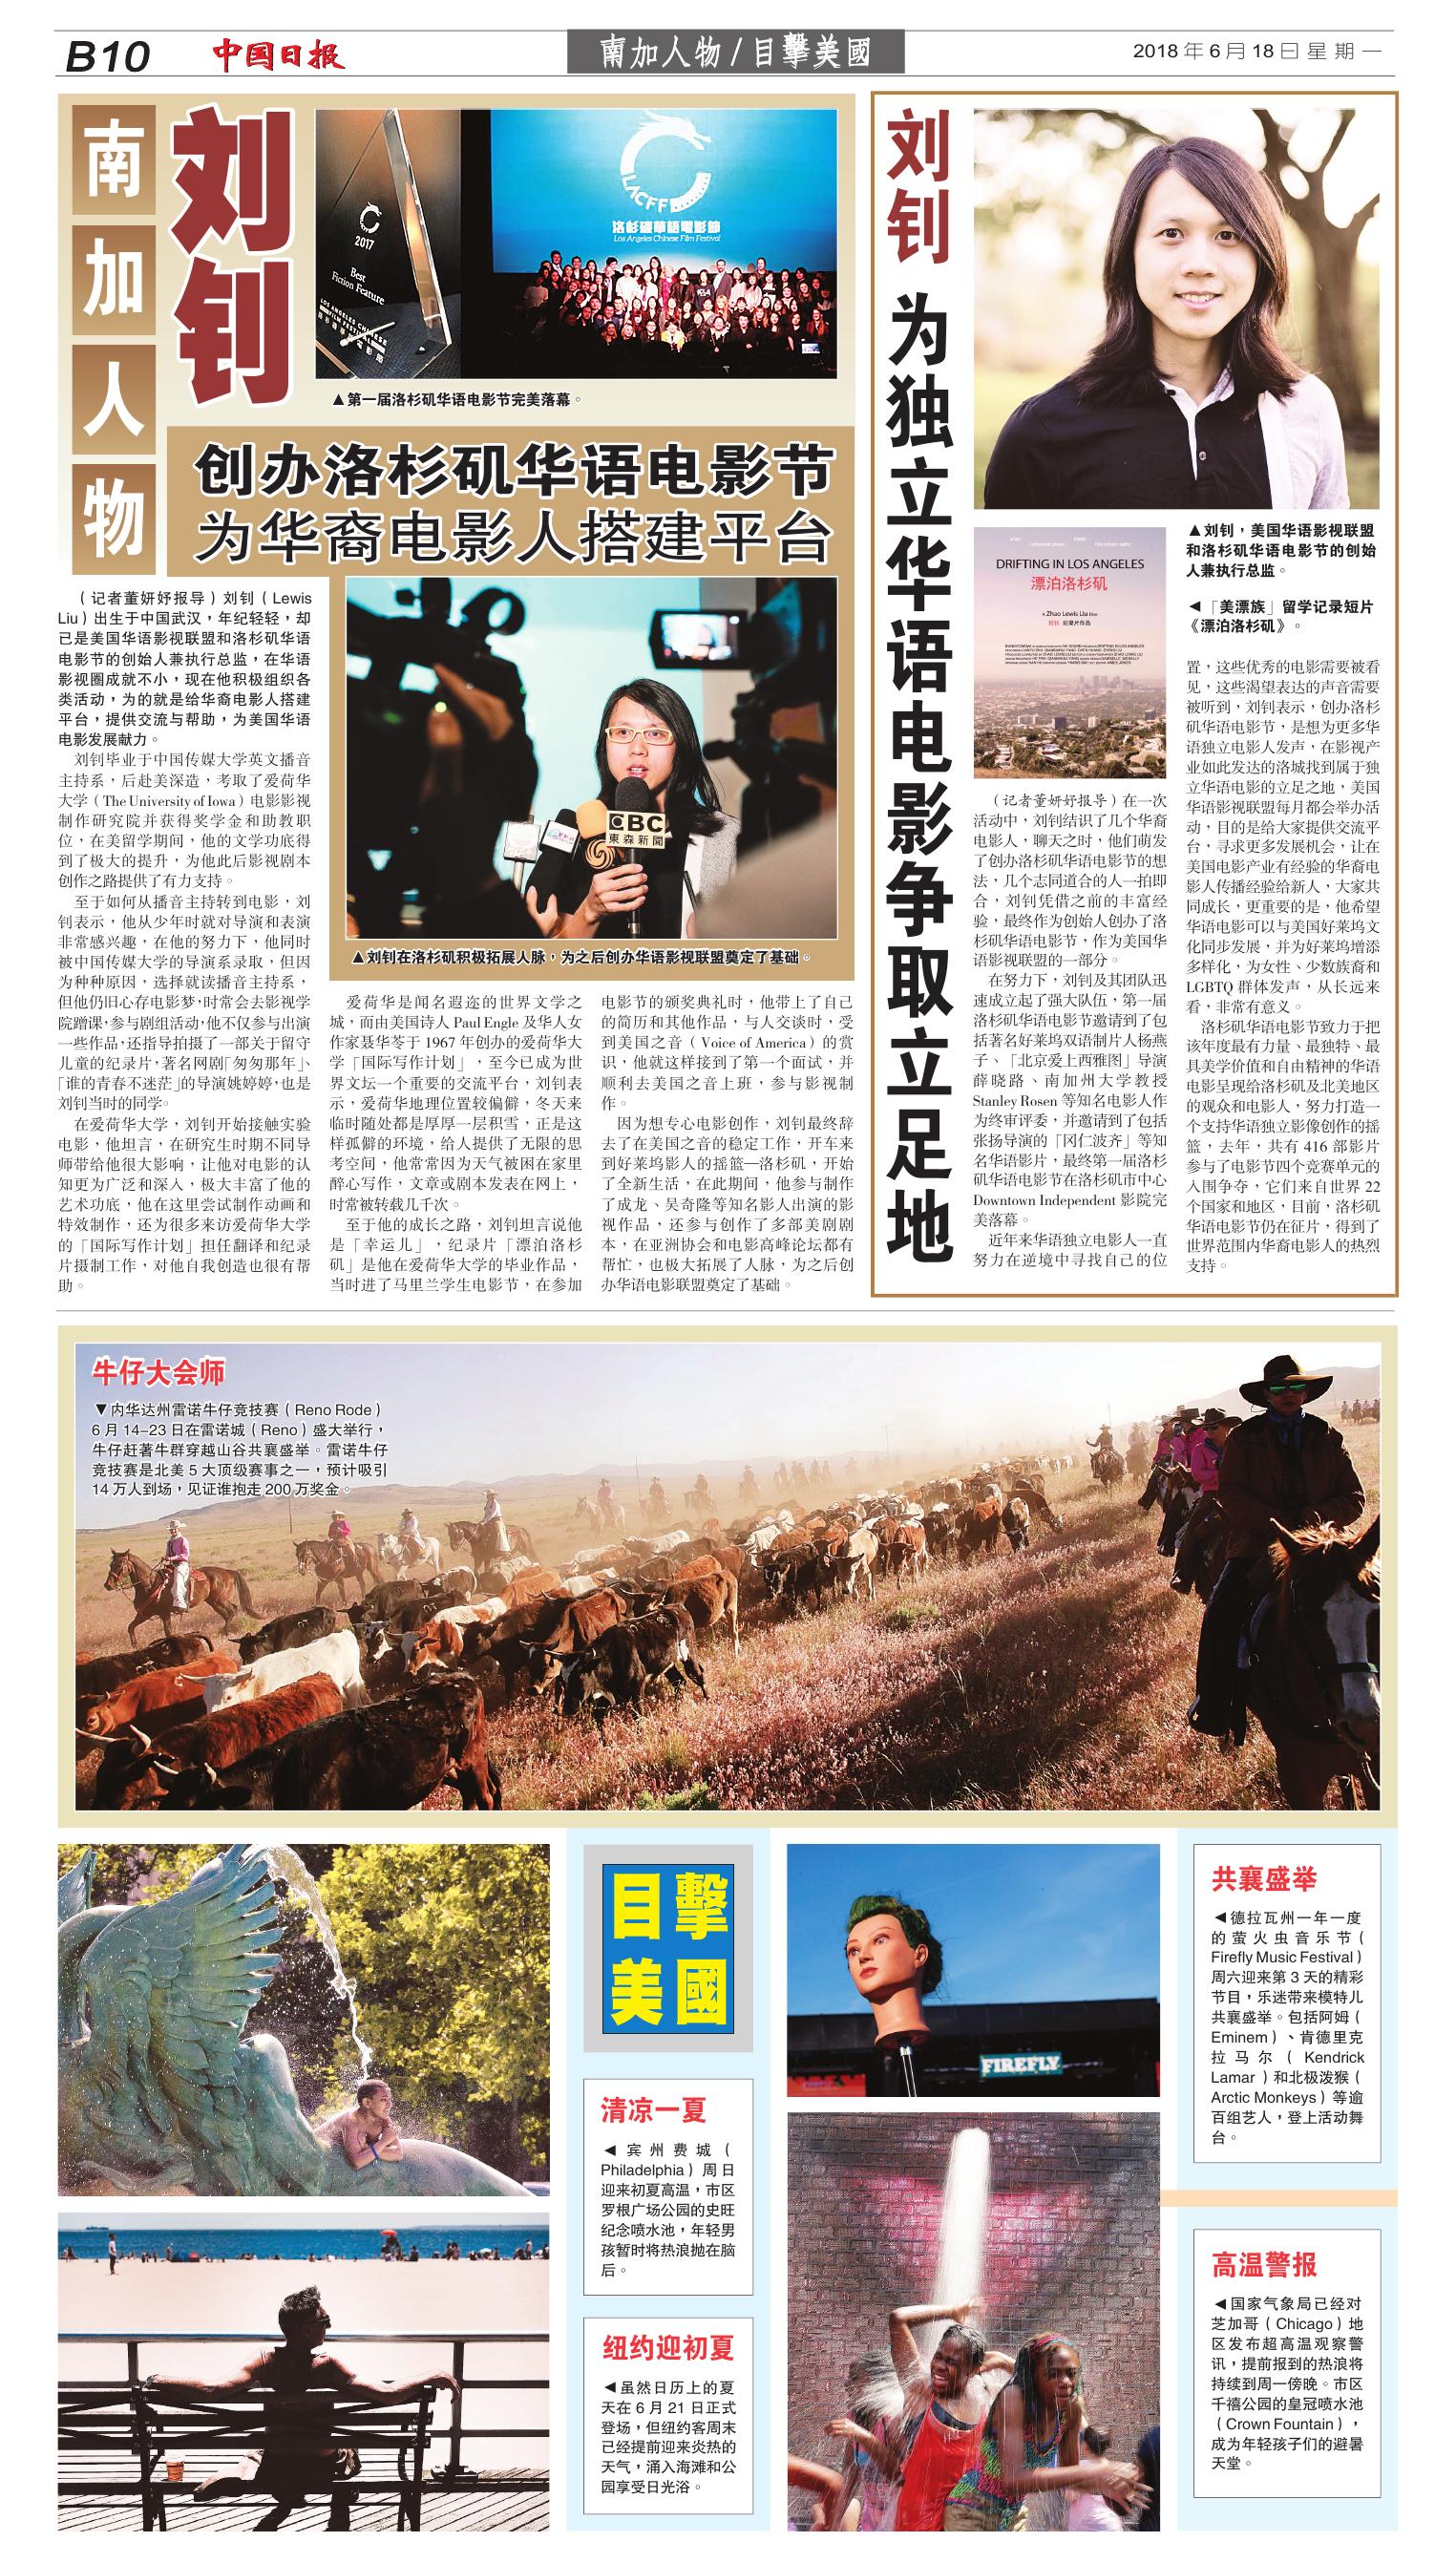 China Daily.jpg